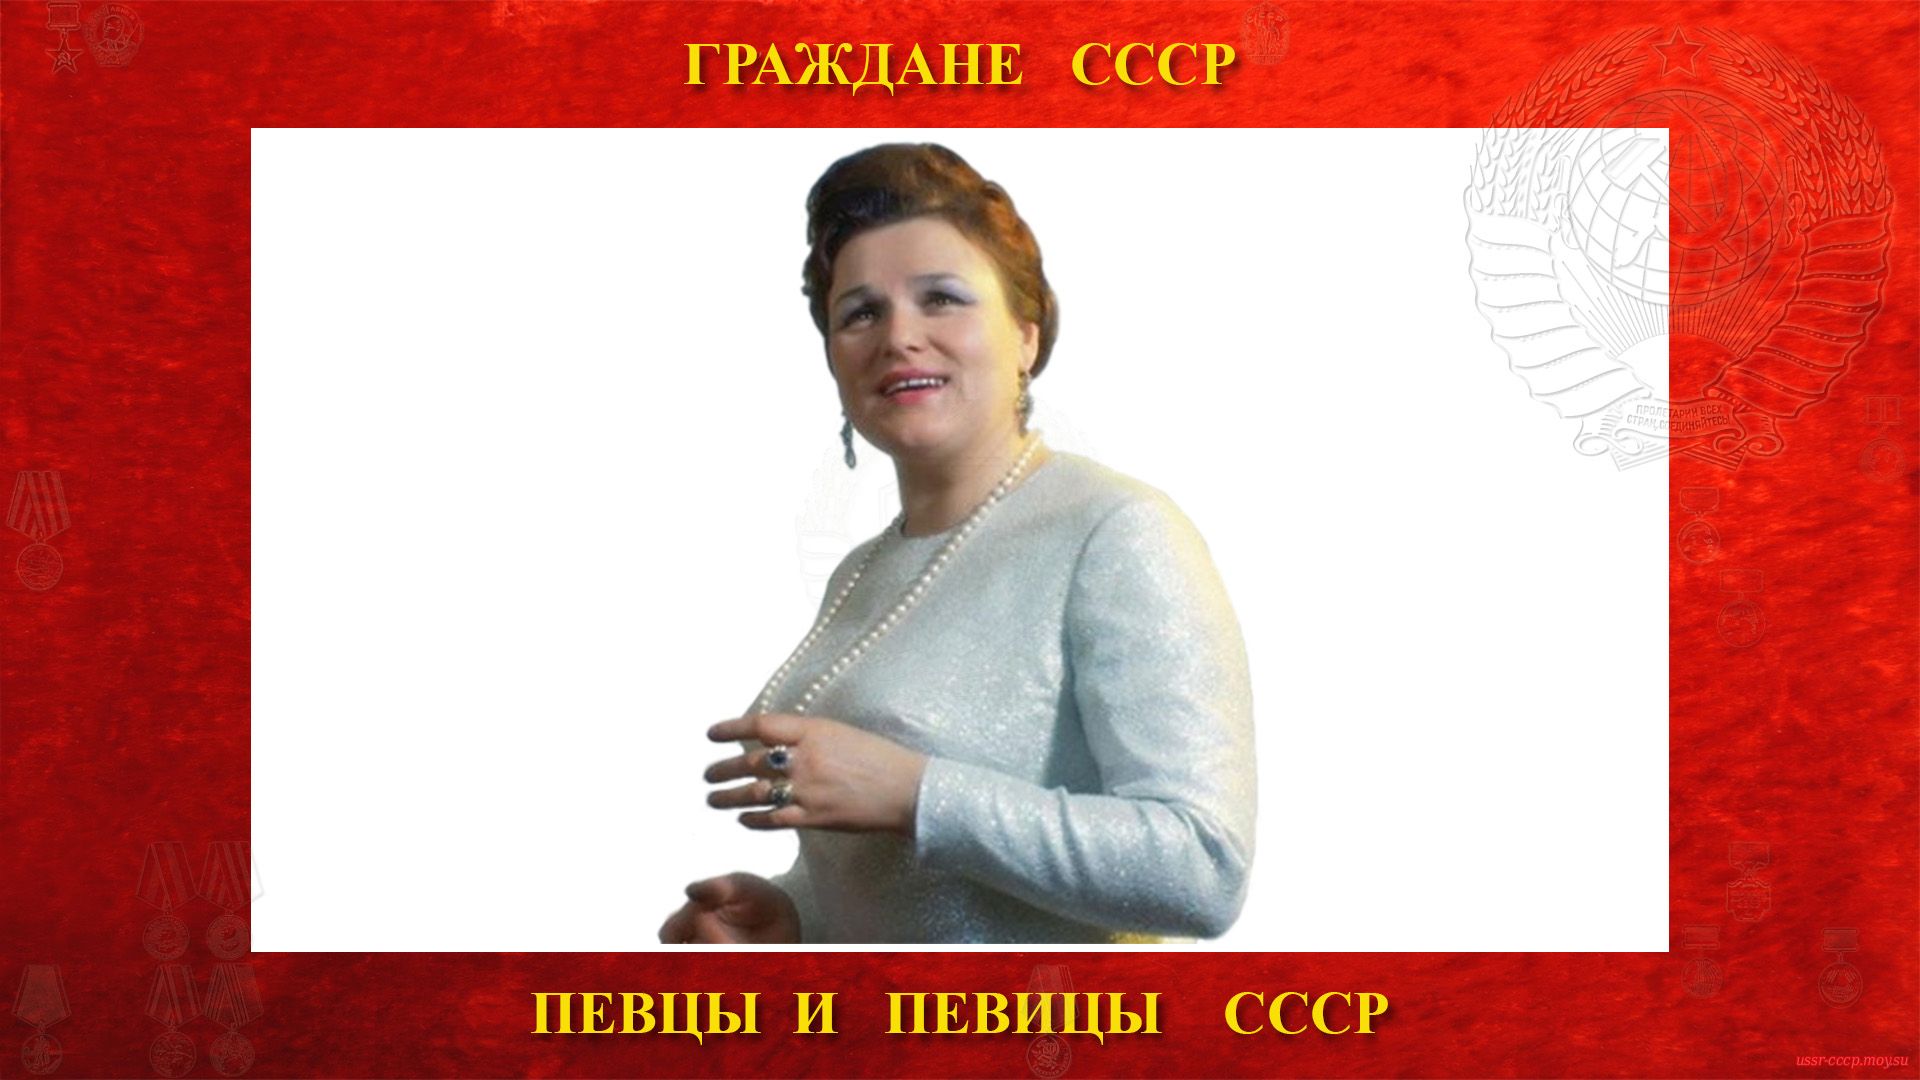 Зыкина Людмила Георгиевна — Советская певица СССР